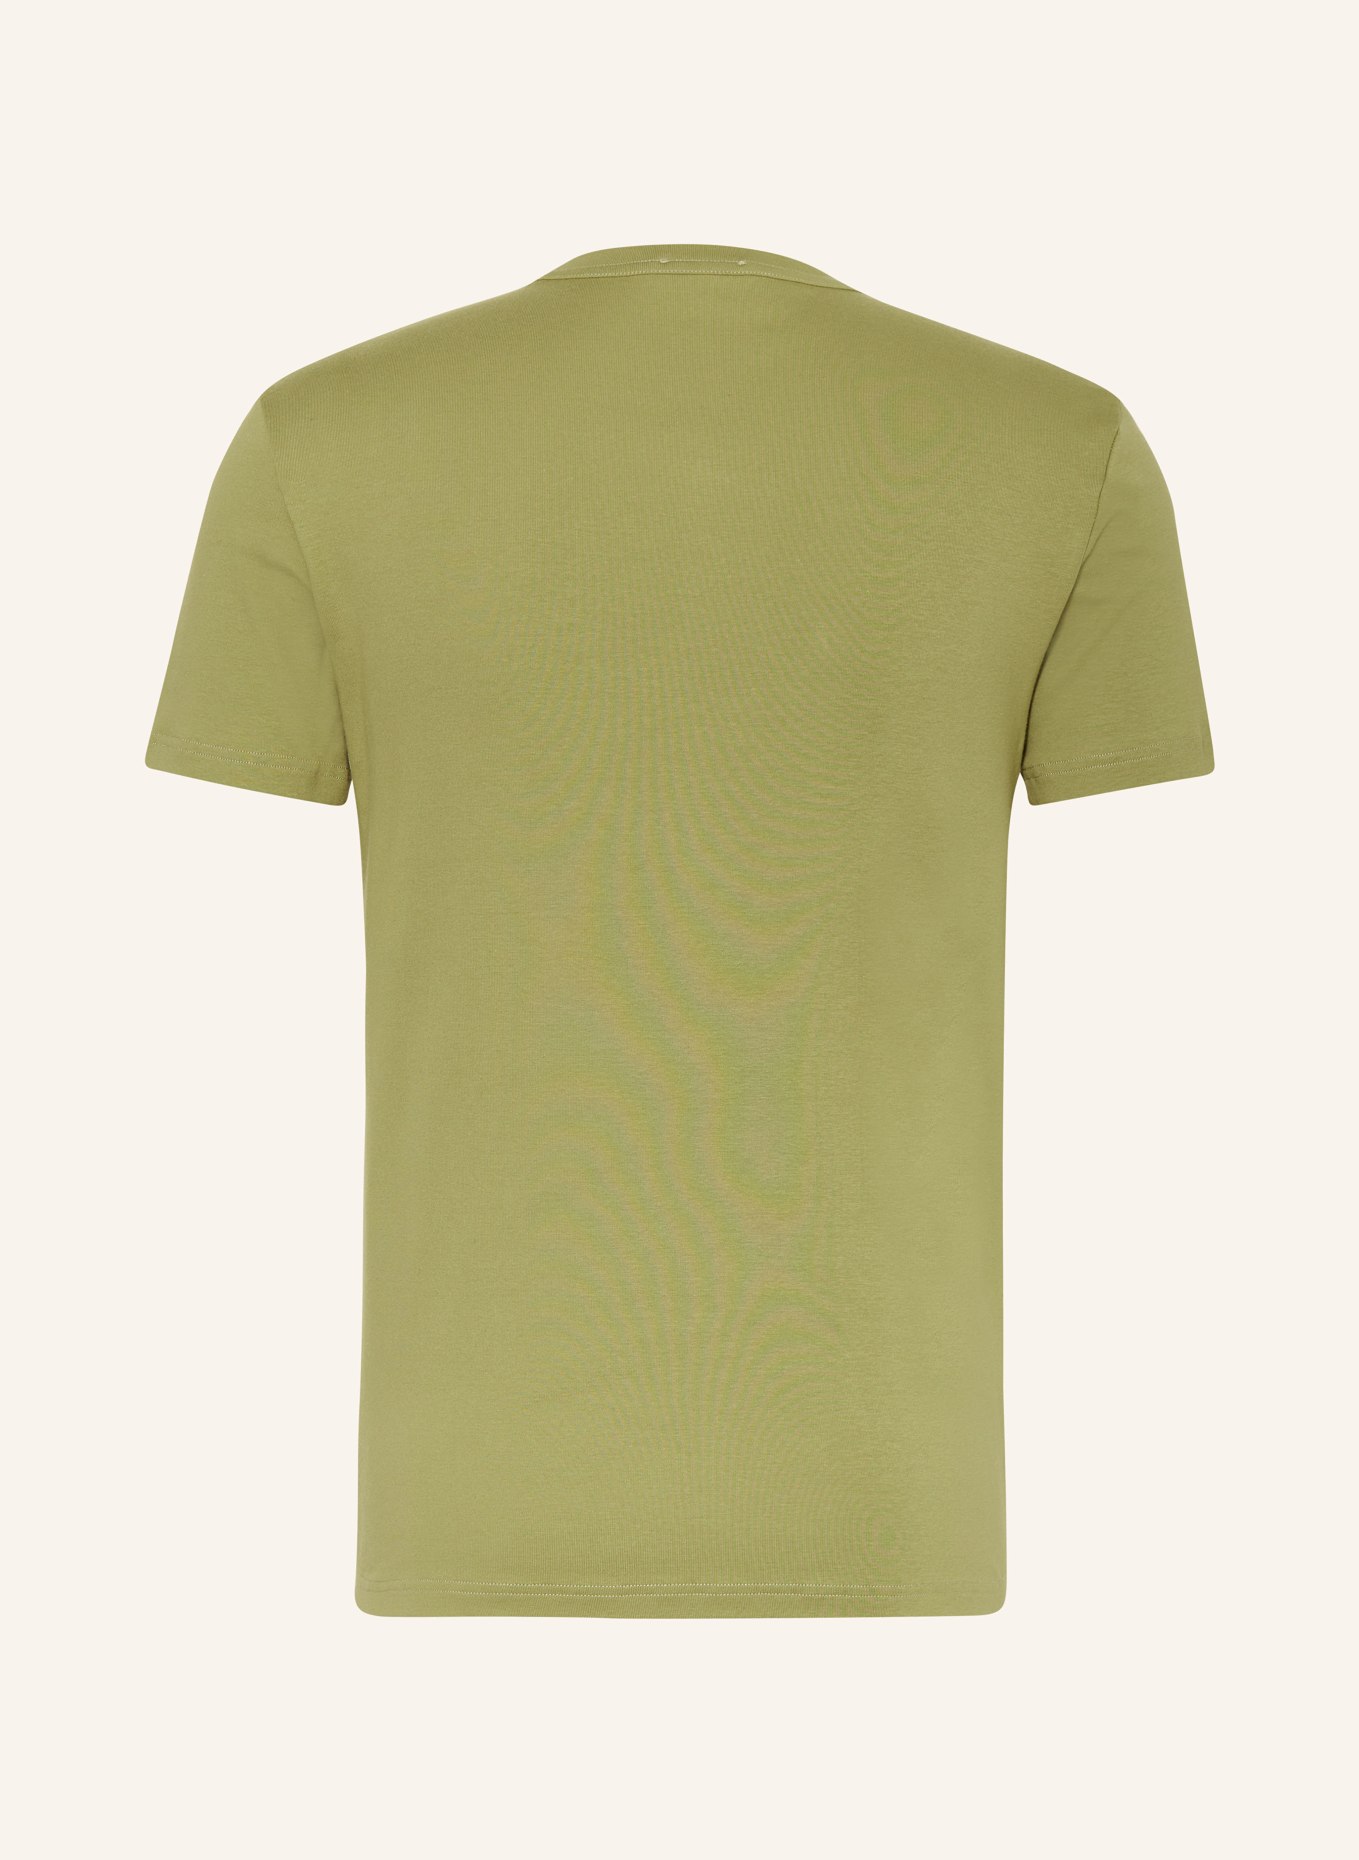 TOM FORD T-shirt, Color: OLIVE (Image 2)